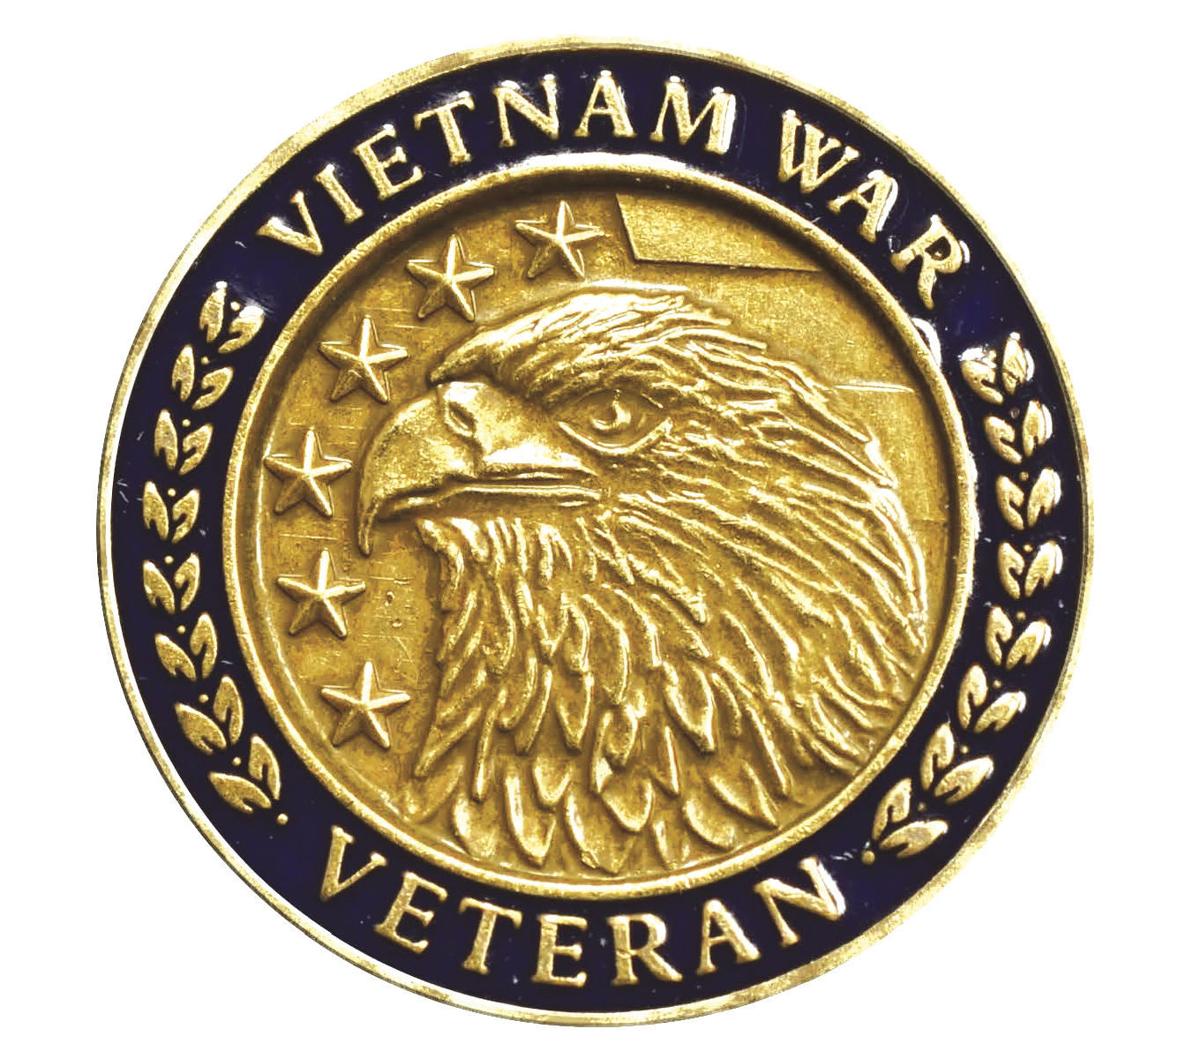 U S Issues Pin To Honor Vietnam Veterans